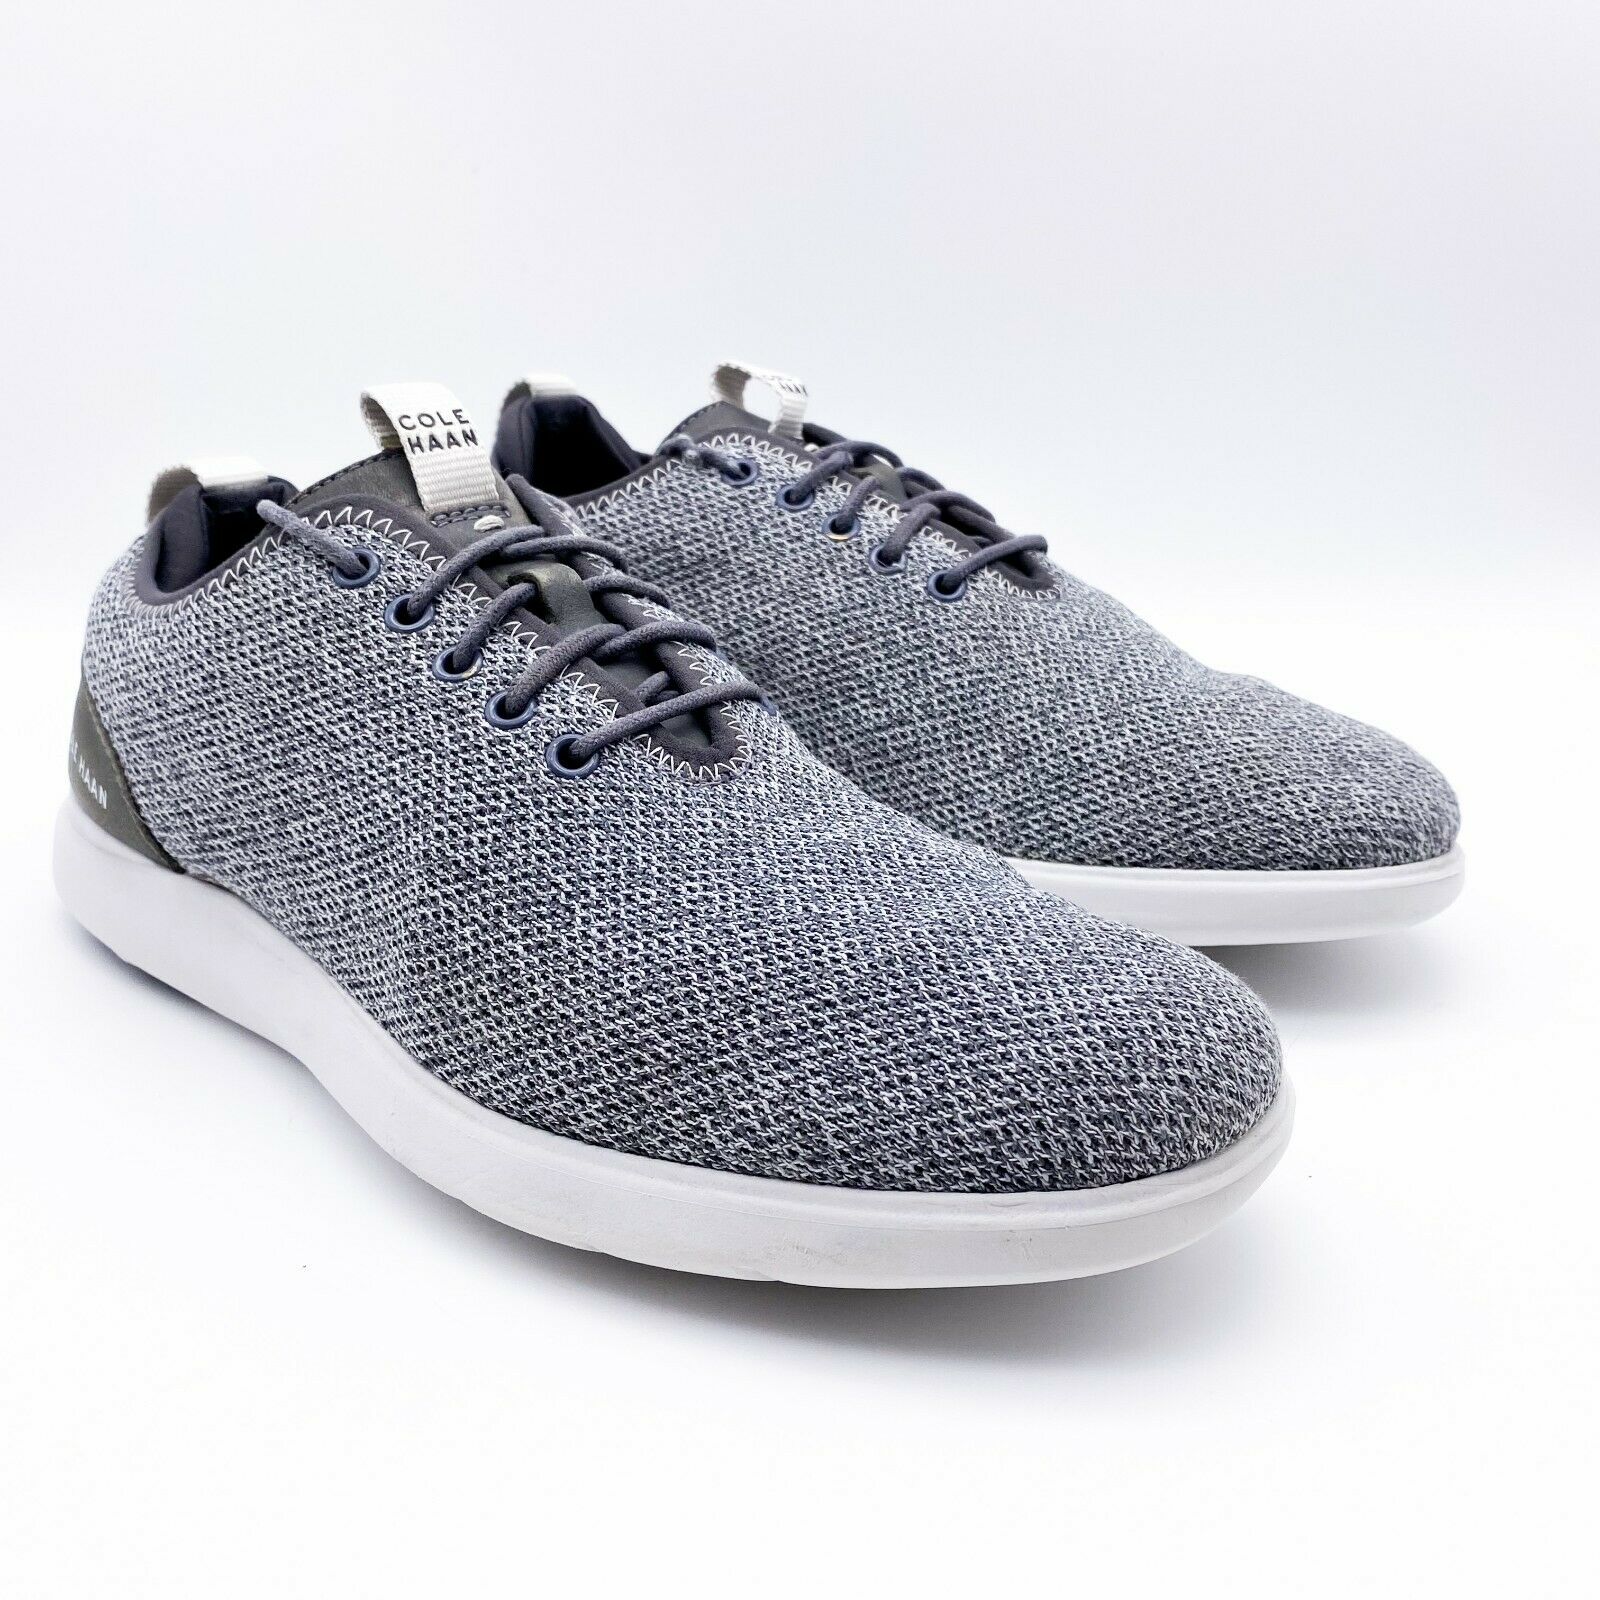 Cole Haan Grand Plus Essex Distance Knit Oxford Men's Shoes Size 9.5M C30821